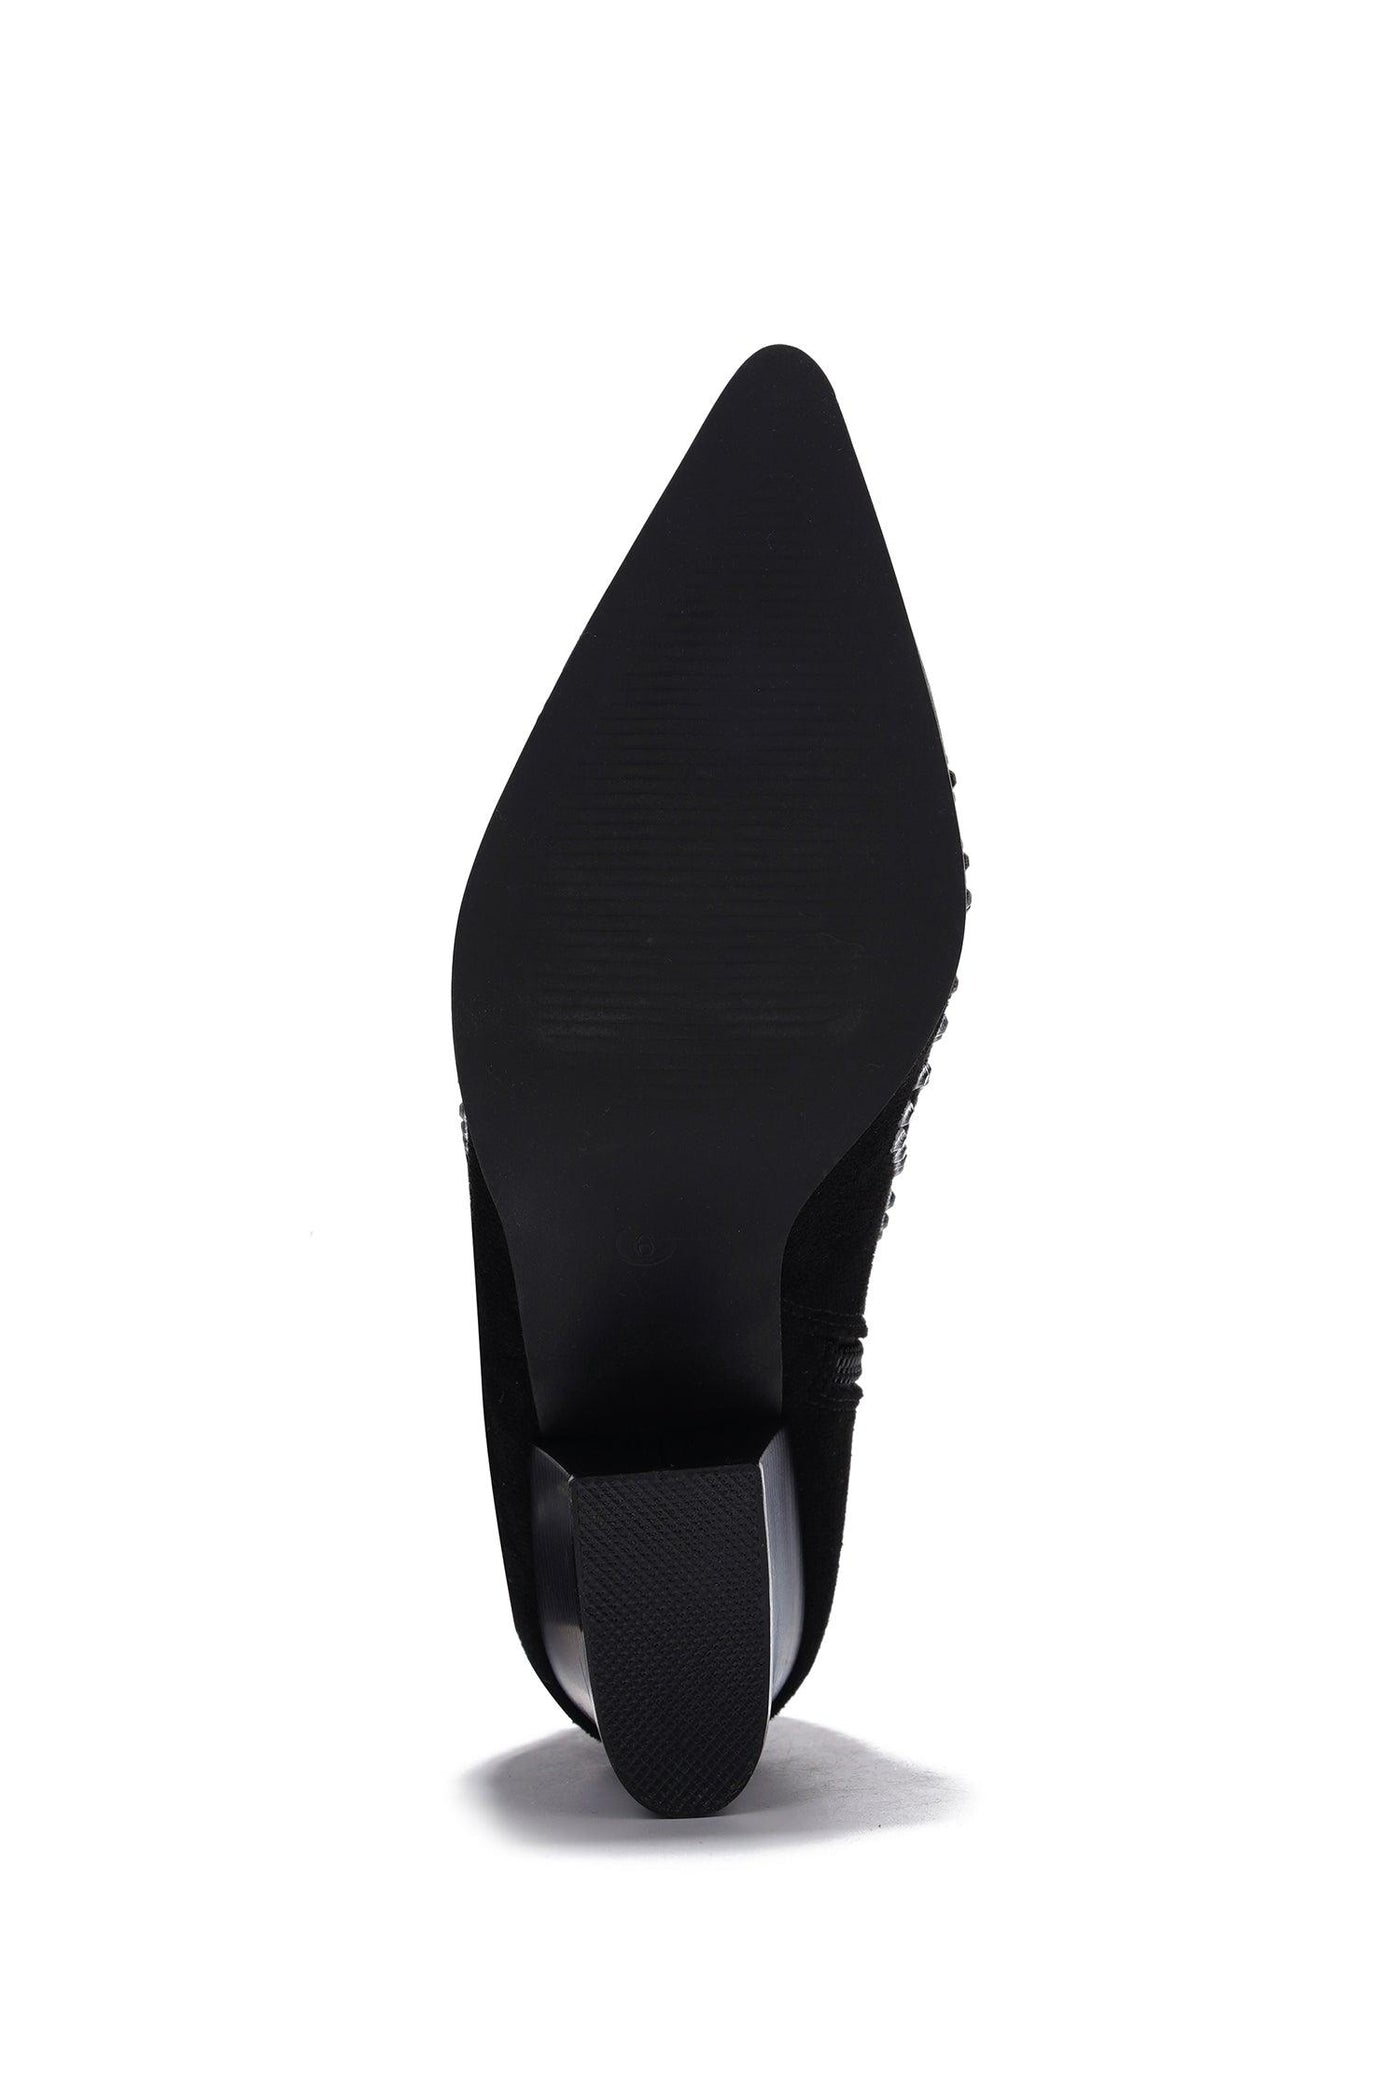 TRIPOLI - BLACK Thigh High Boots - AMIClubwear